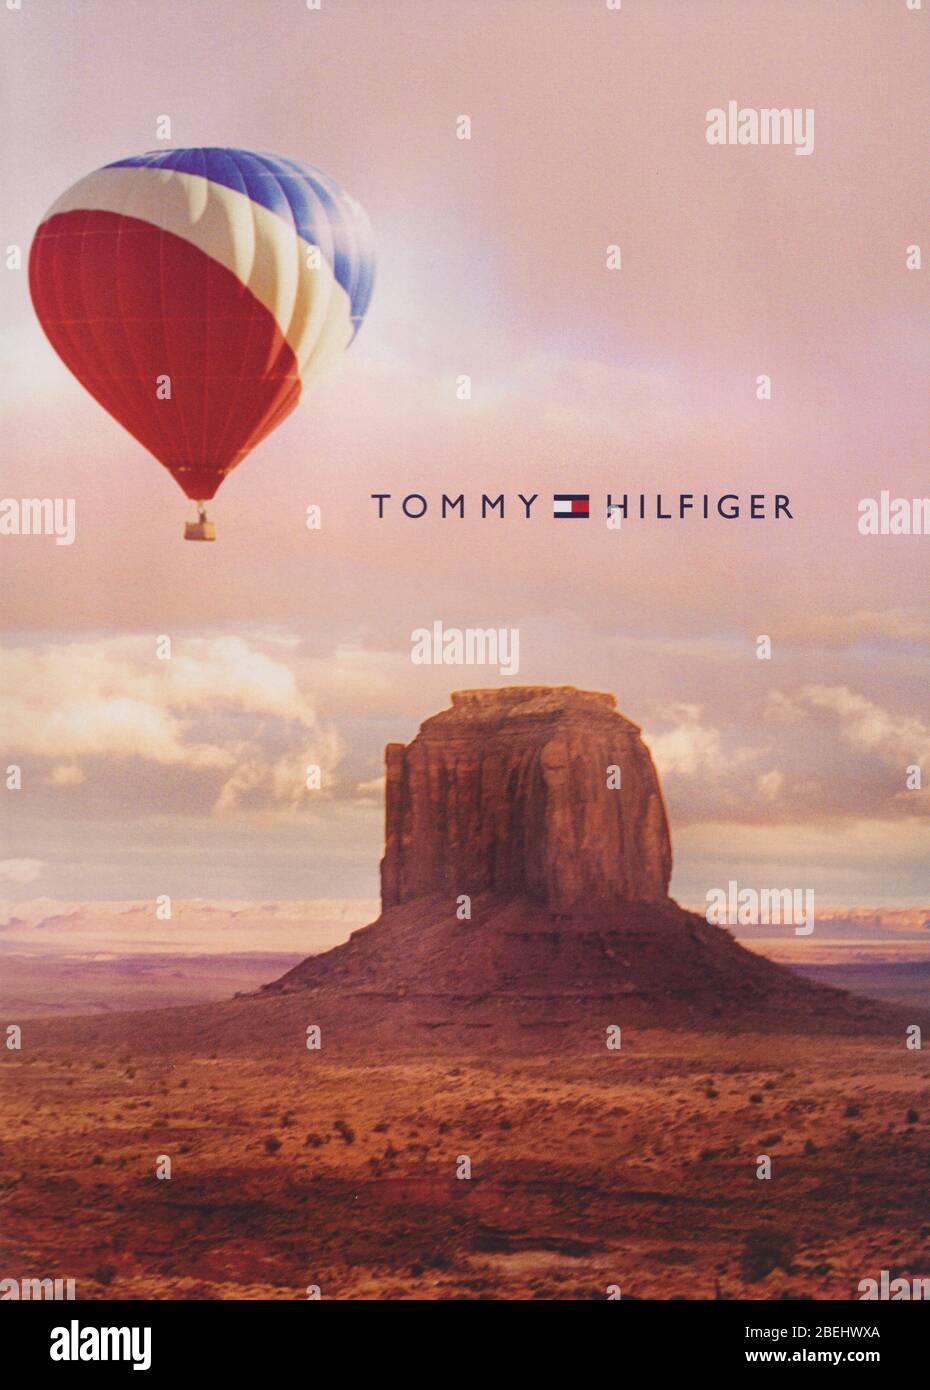 Poster Werbung Tommy Hilfiger Modehaus mit Anja Rubik in Papiermagazin aus  dem Jahr 2007, Werbung, kreative Tommy Hilfiger 2000er Werbung  Stockfotografie - Alamy